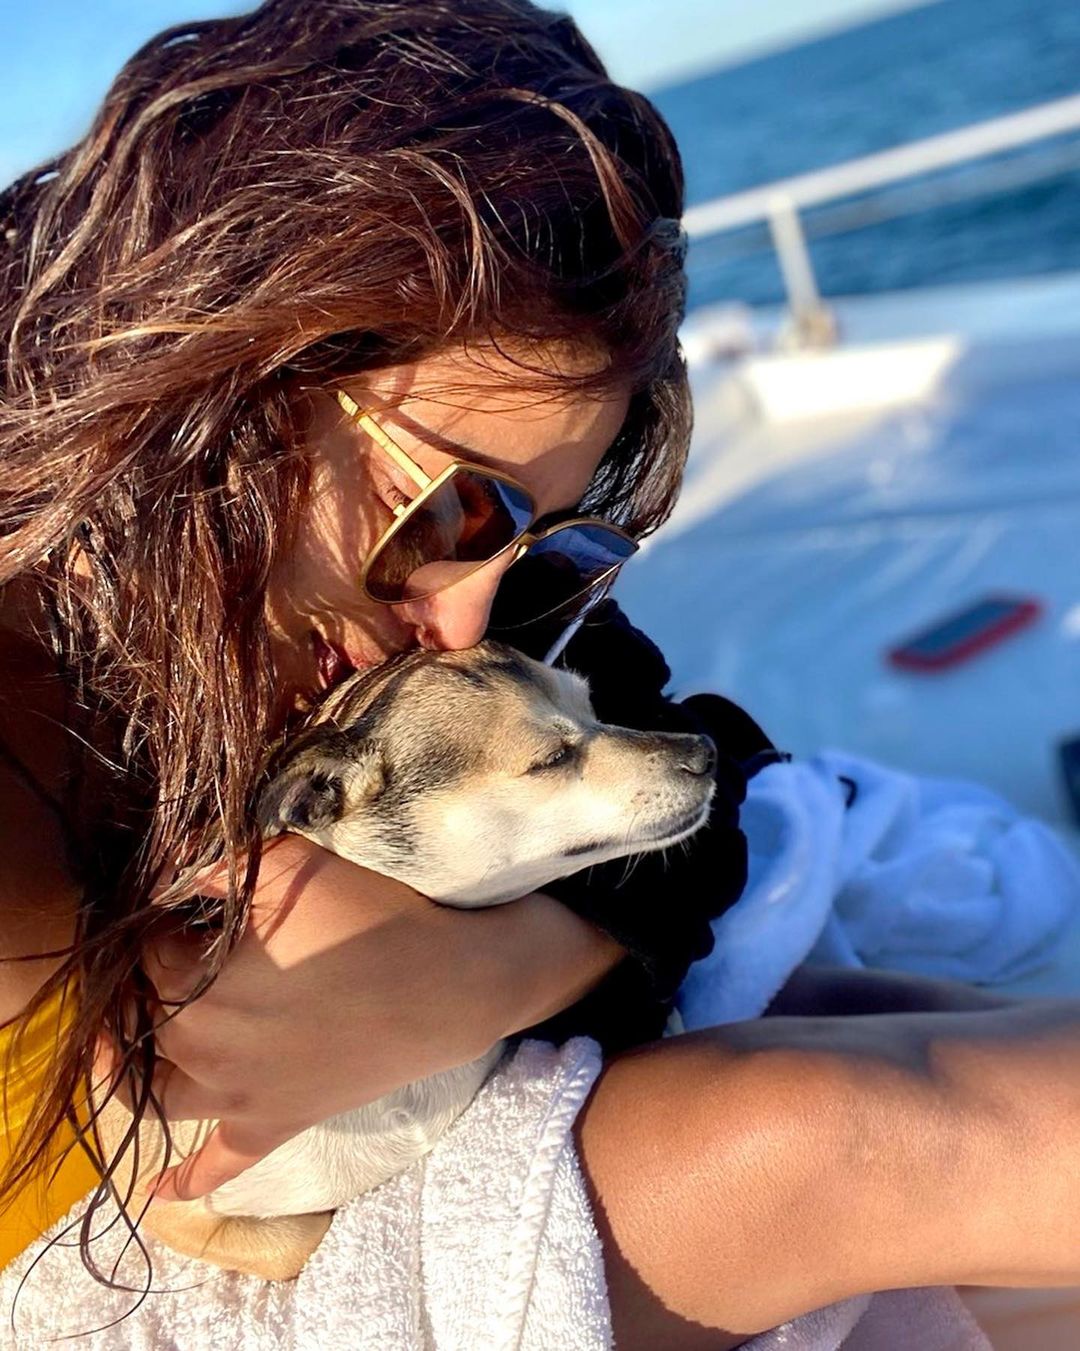 Fotos n°3 : Priyanka Chopra est en un barco!